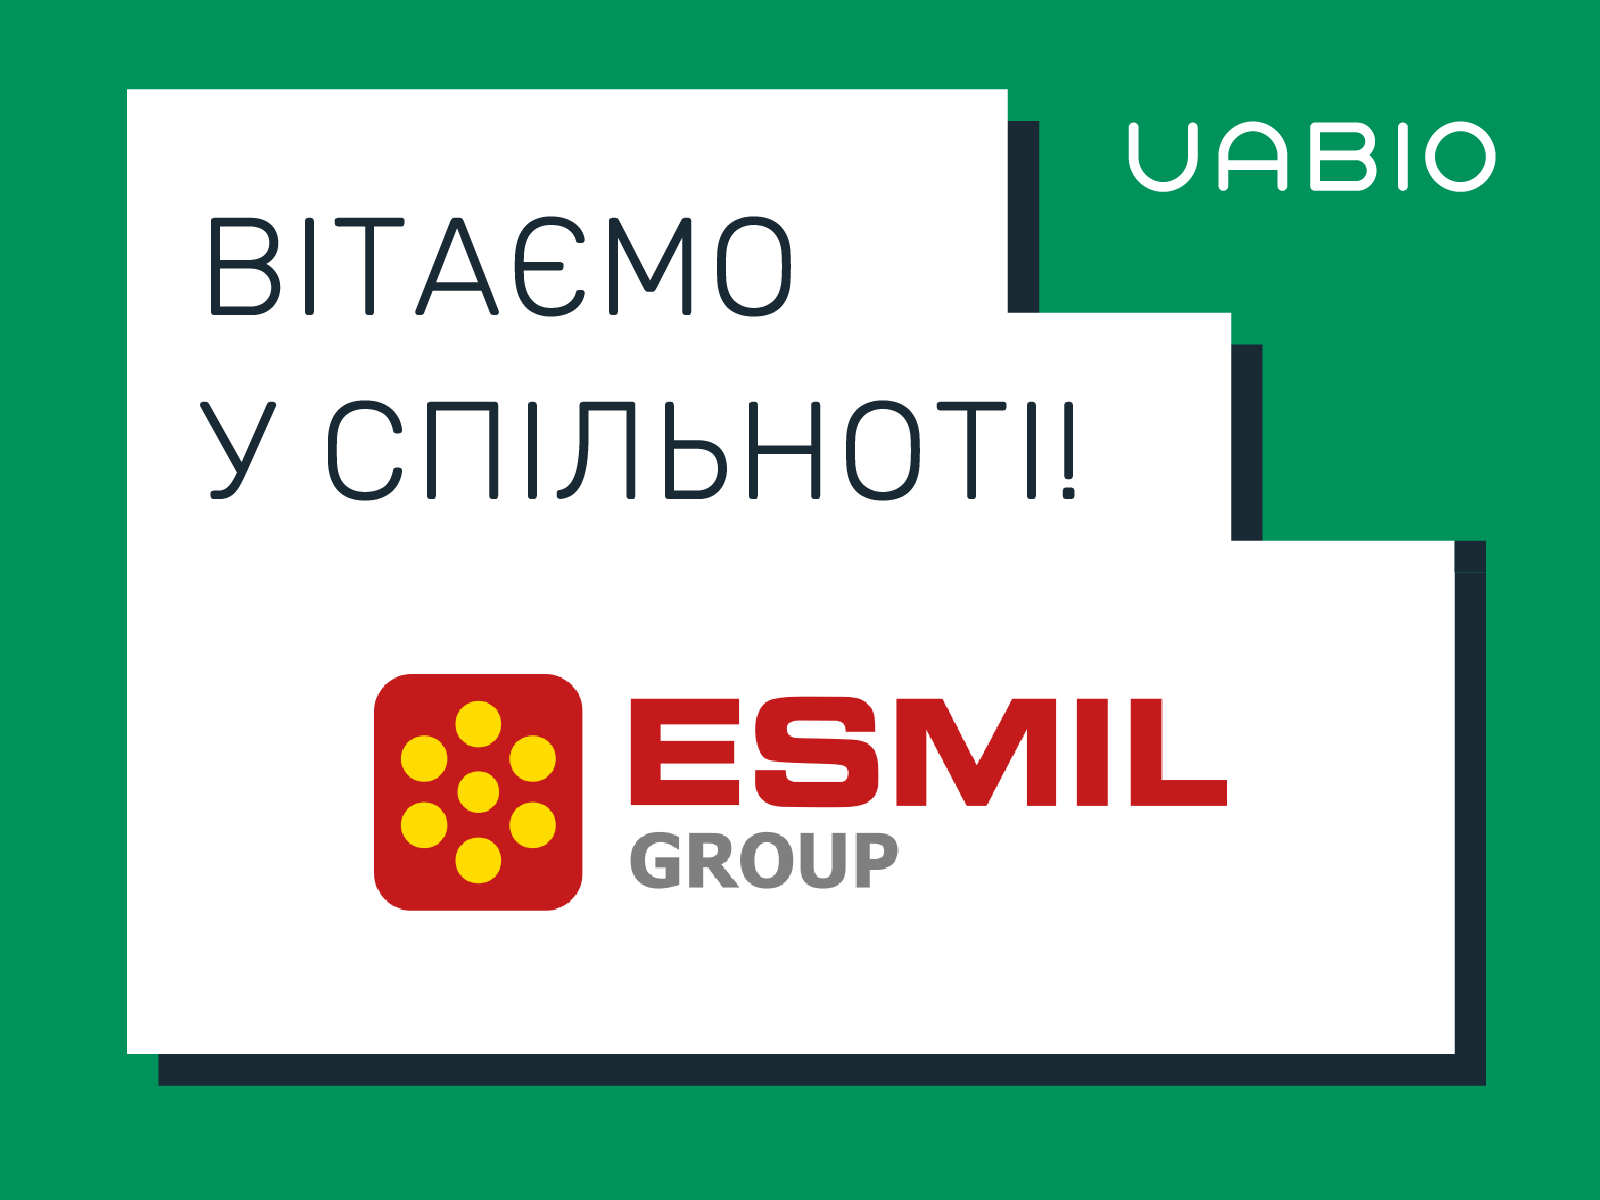 Вітаємо у команді UABIO нового члена – компанію ESMIL Group